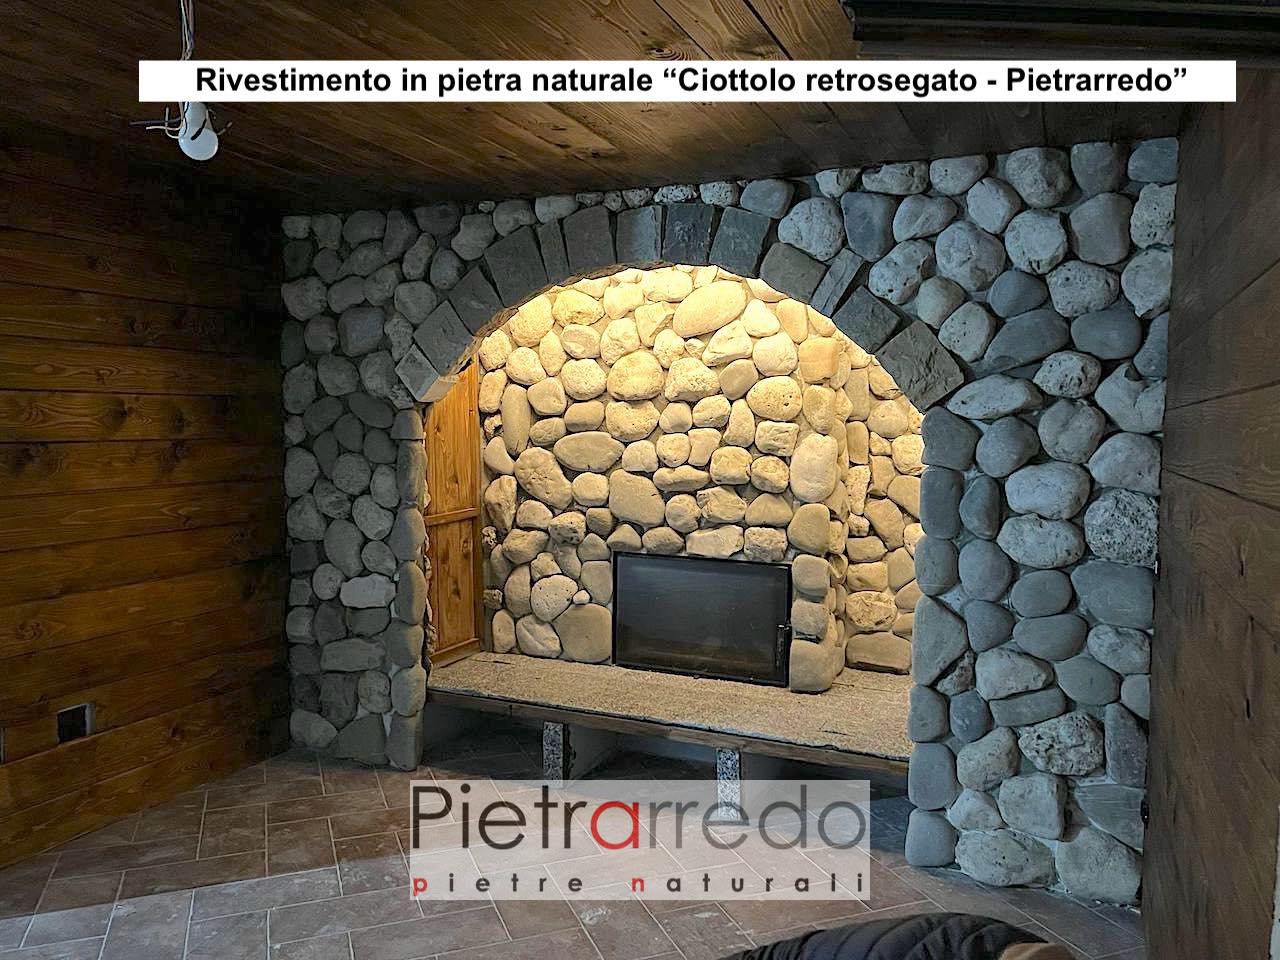 pebble wall covering natural stone sawn stone price offert ciottolo retrosegato wall